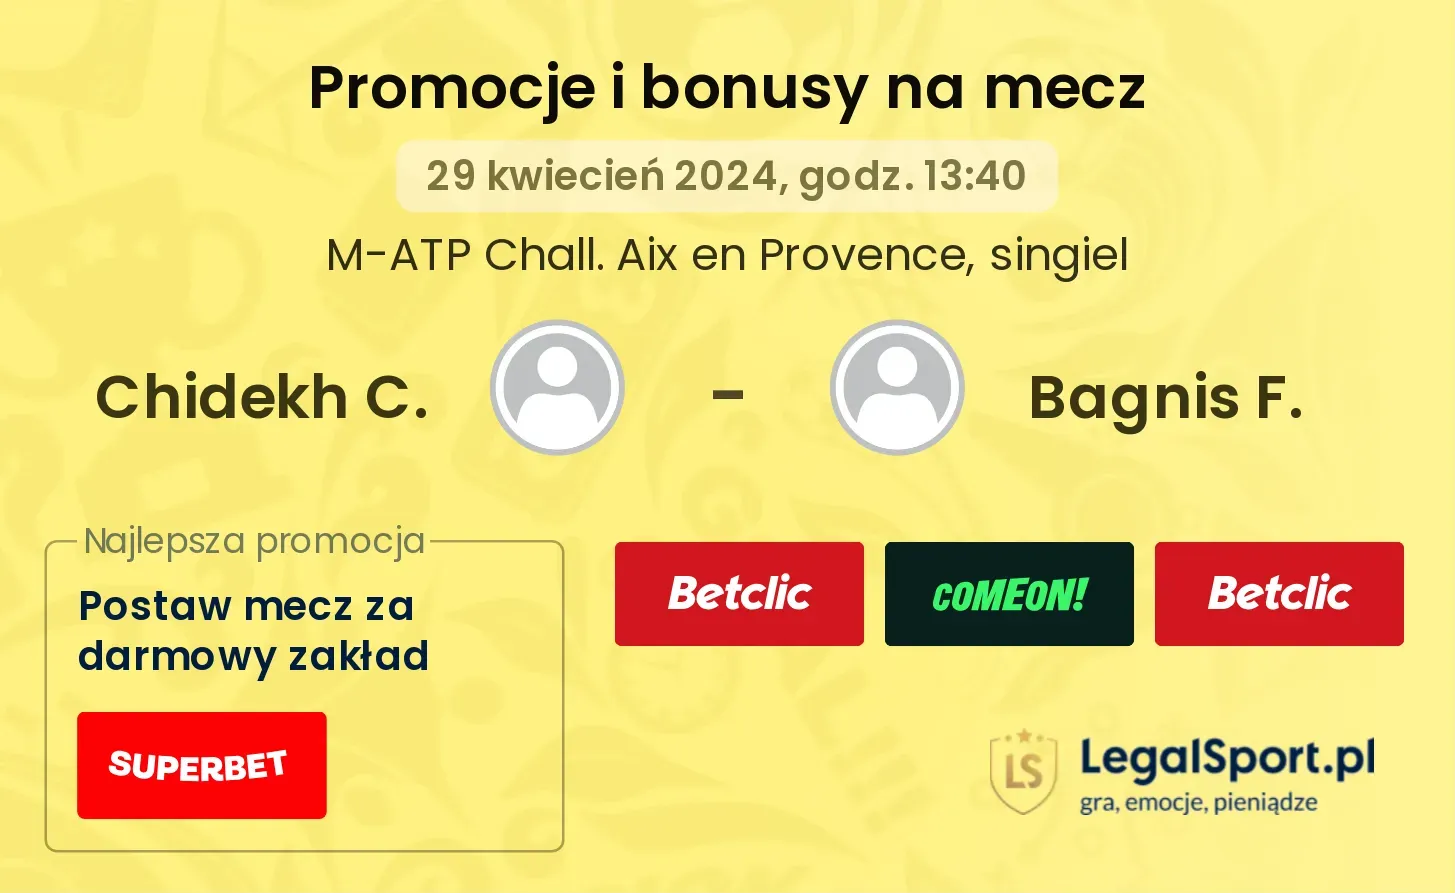 Chidekh C. - Bagnis F. promocje bonusy na mecz